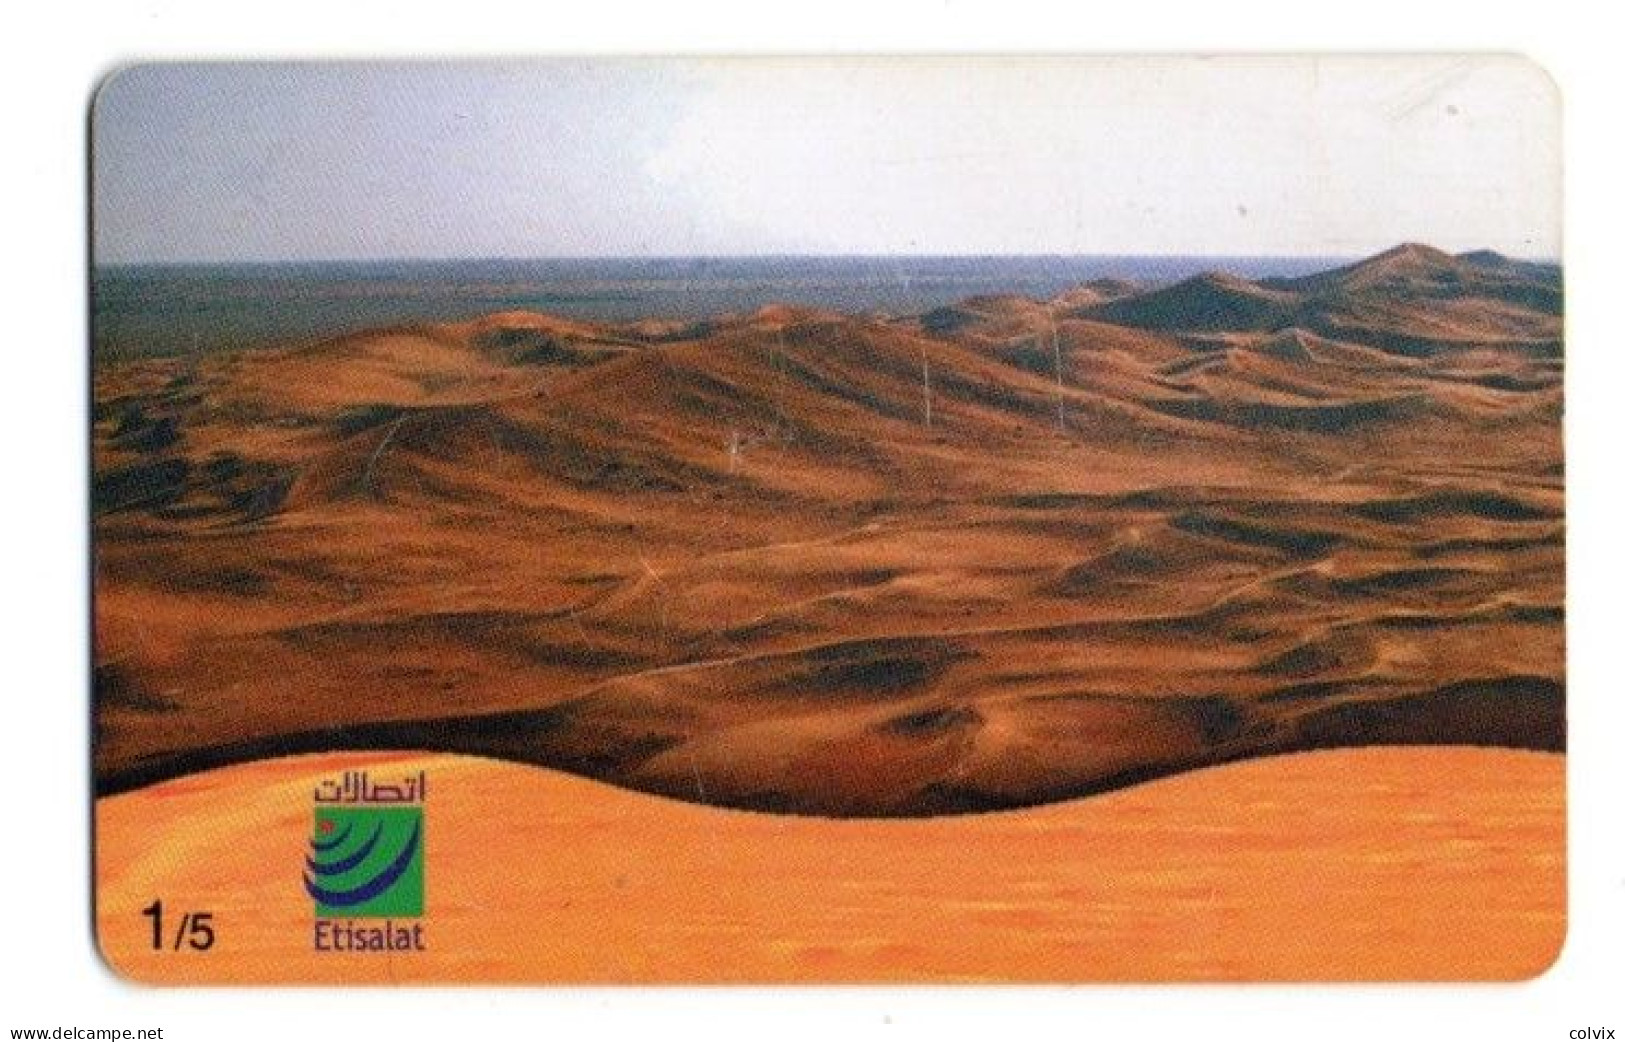 EMIRATS ARABES UNIS TELECARTE EMPTY QUARTER DESERT - United Arab Emirates